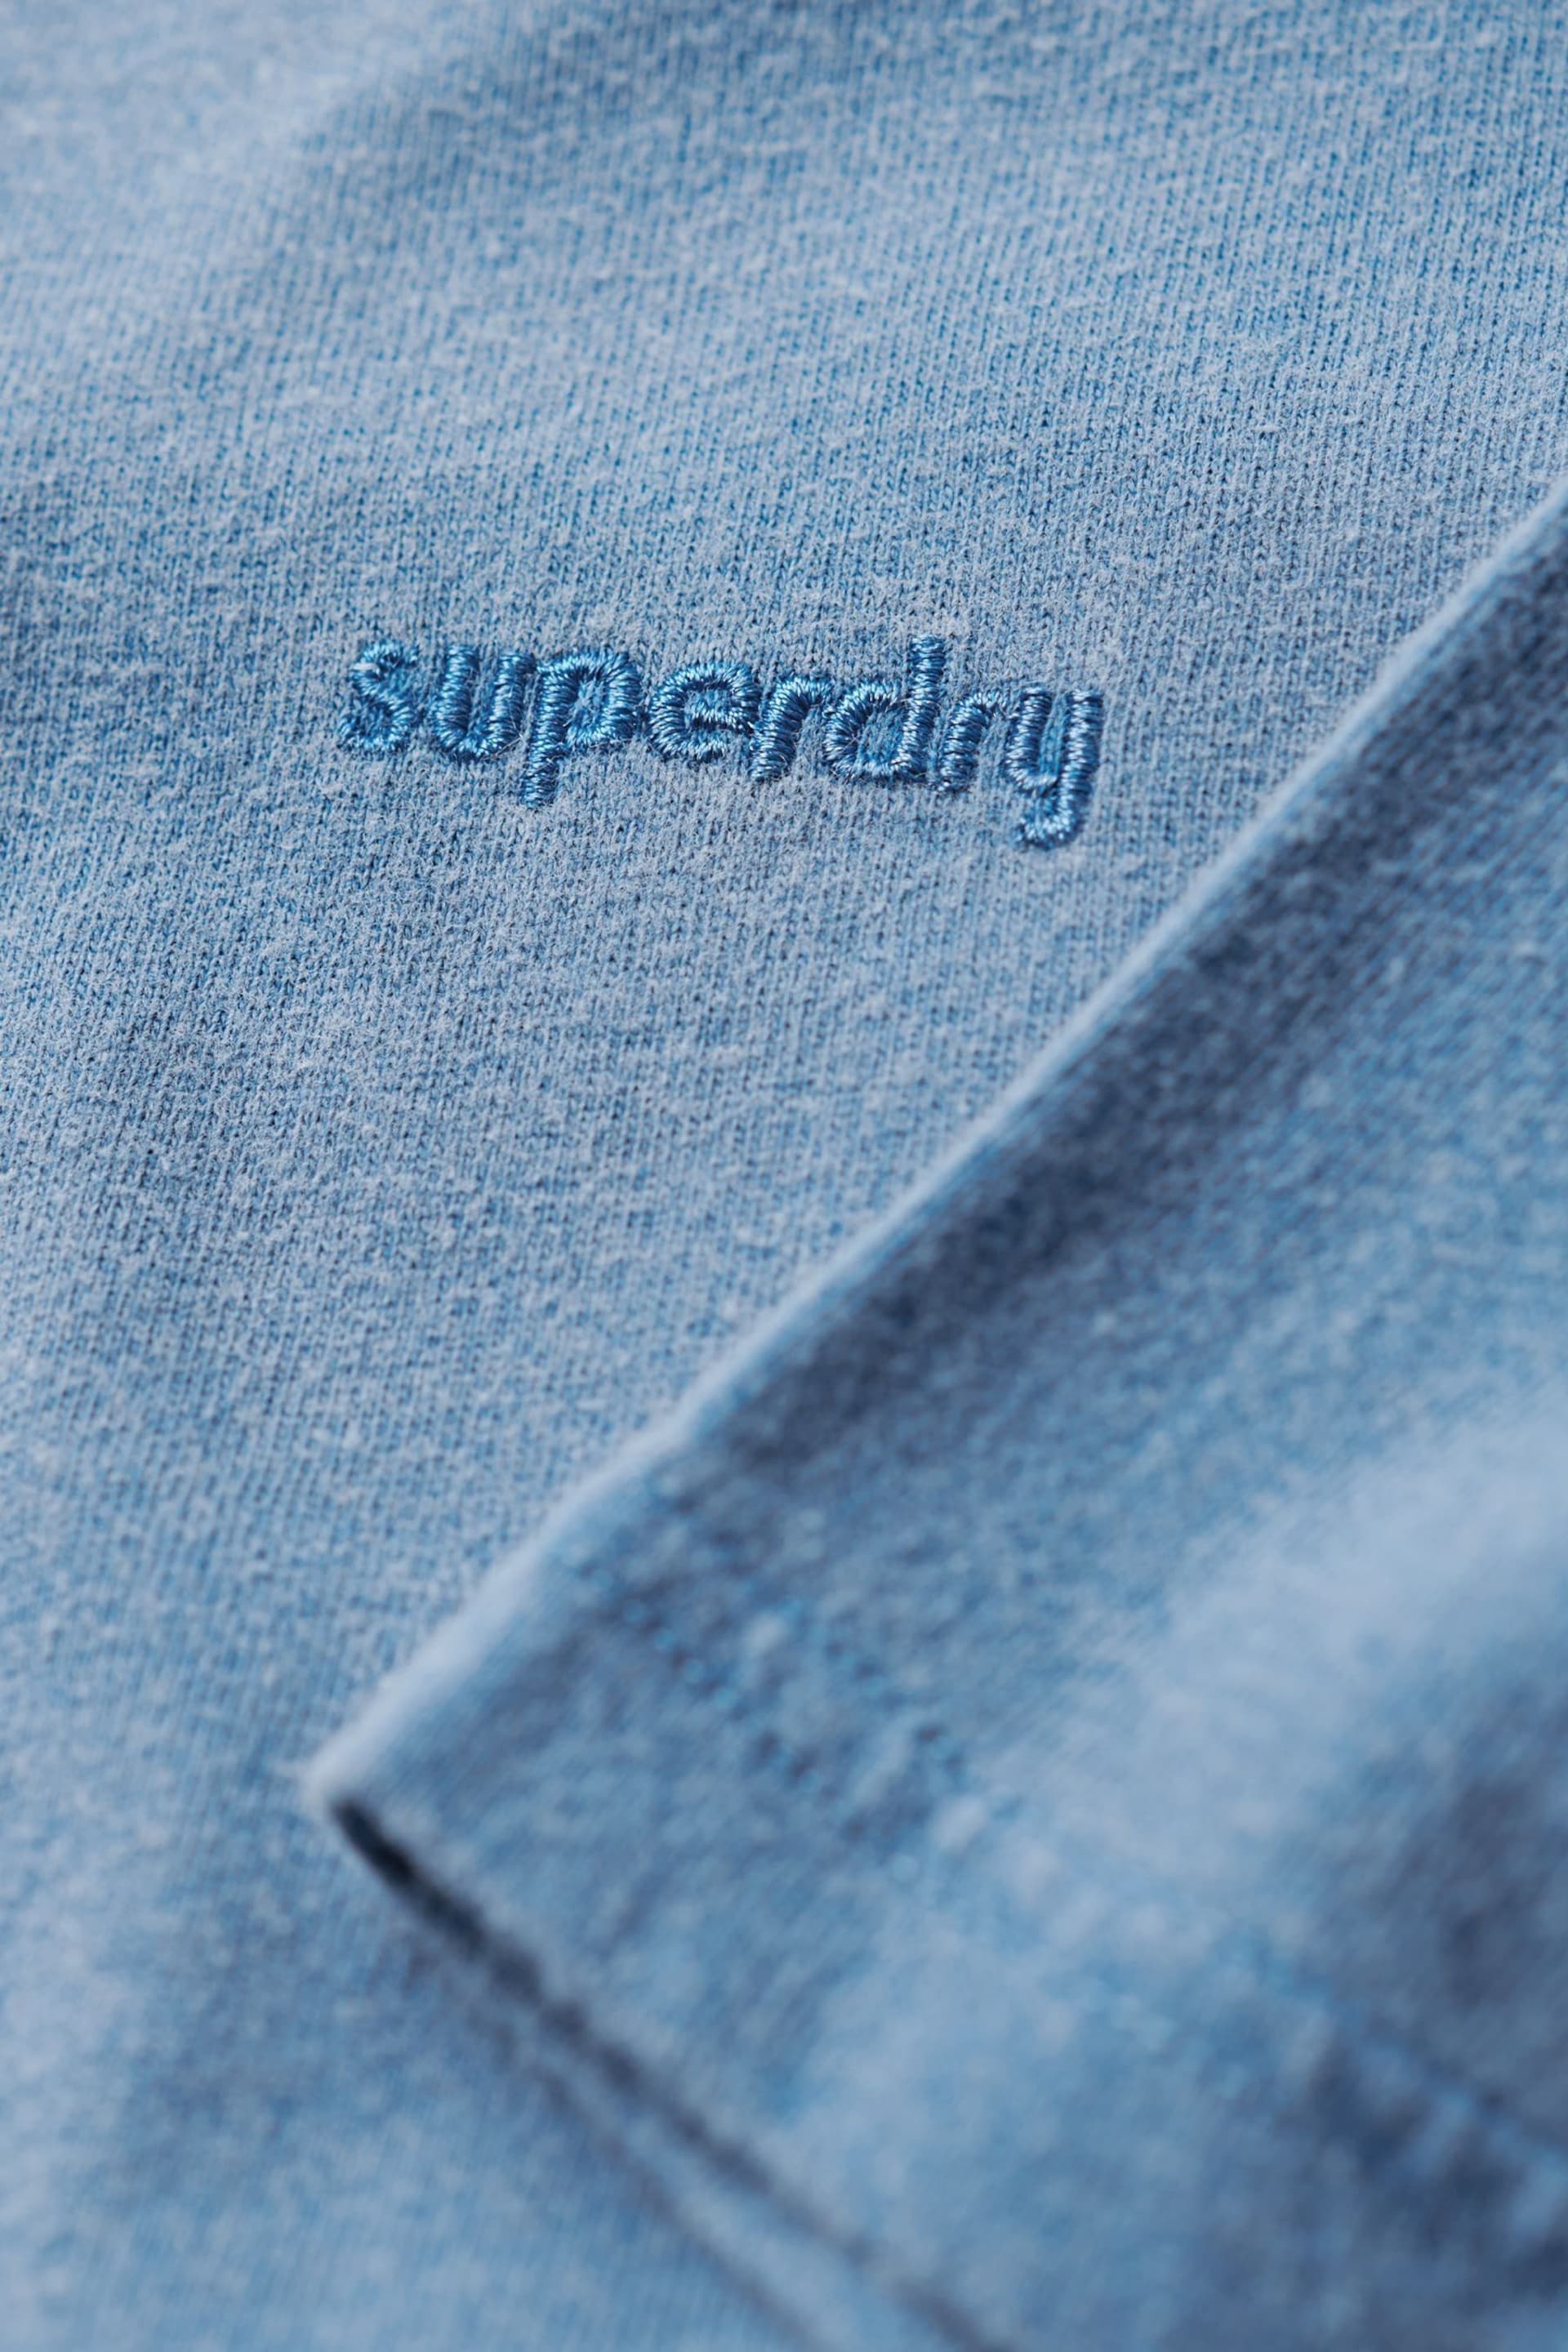 Superdry Light Blue Vintage Washed T-Shirt - Image 5 of 6